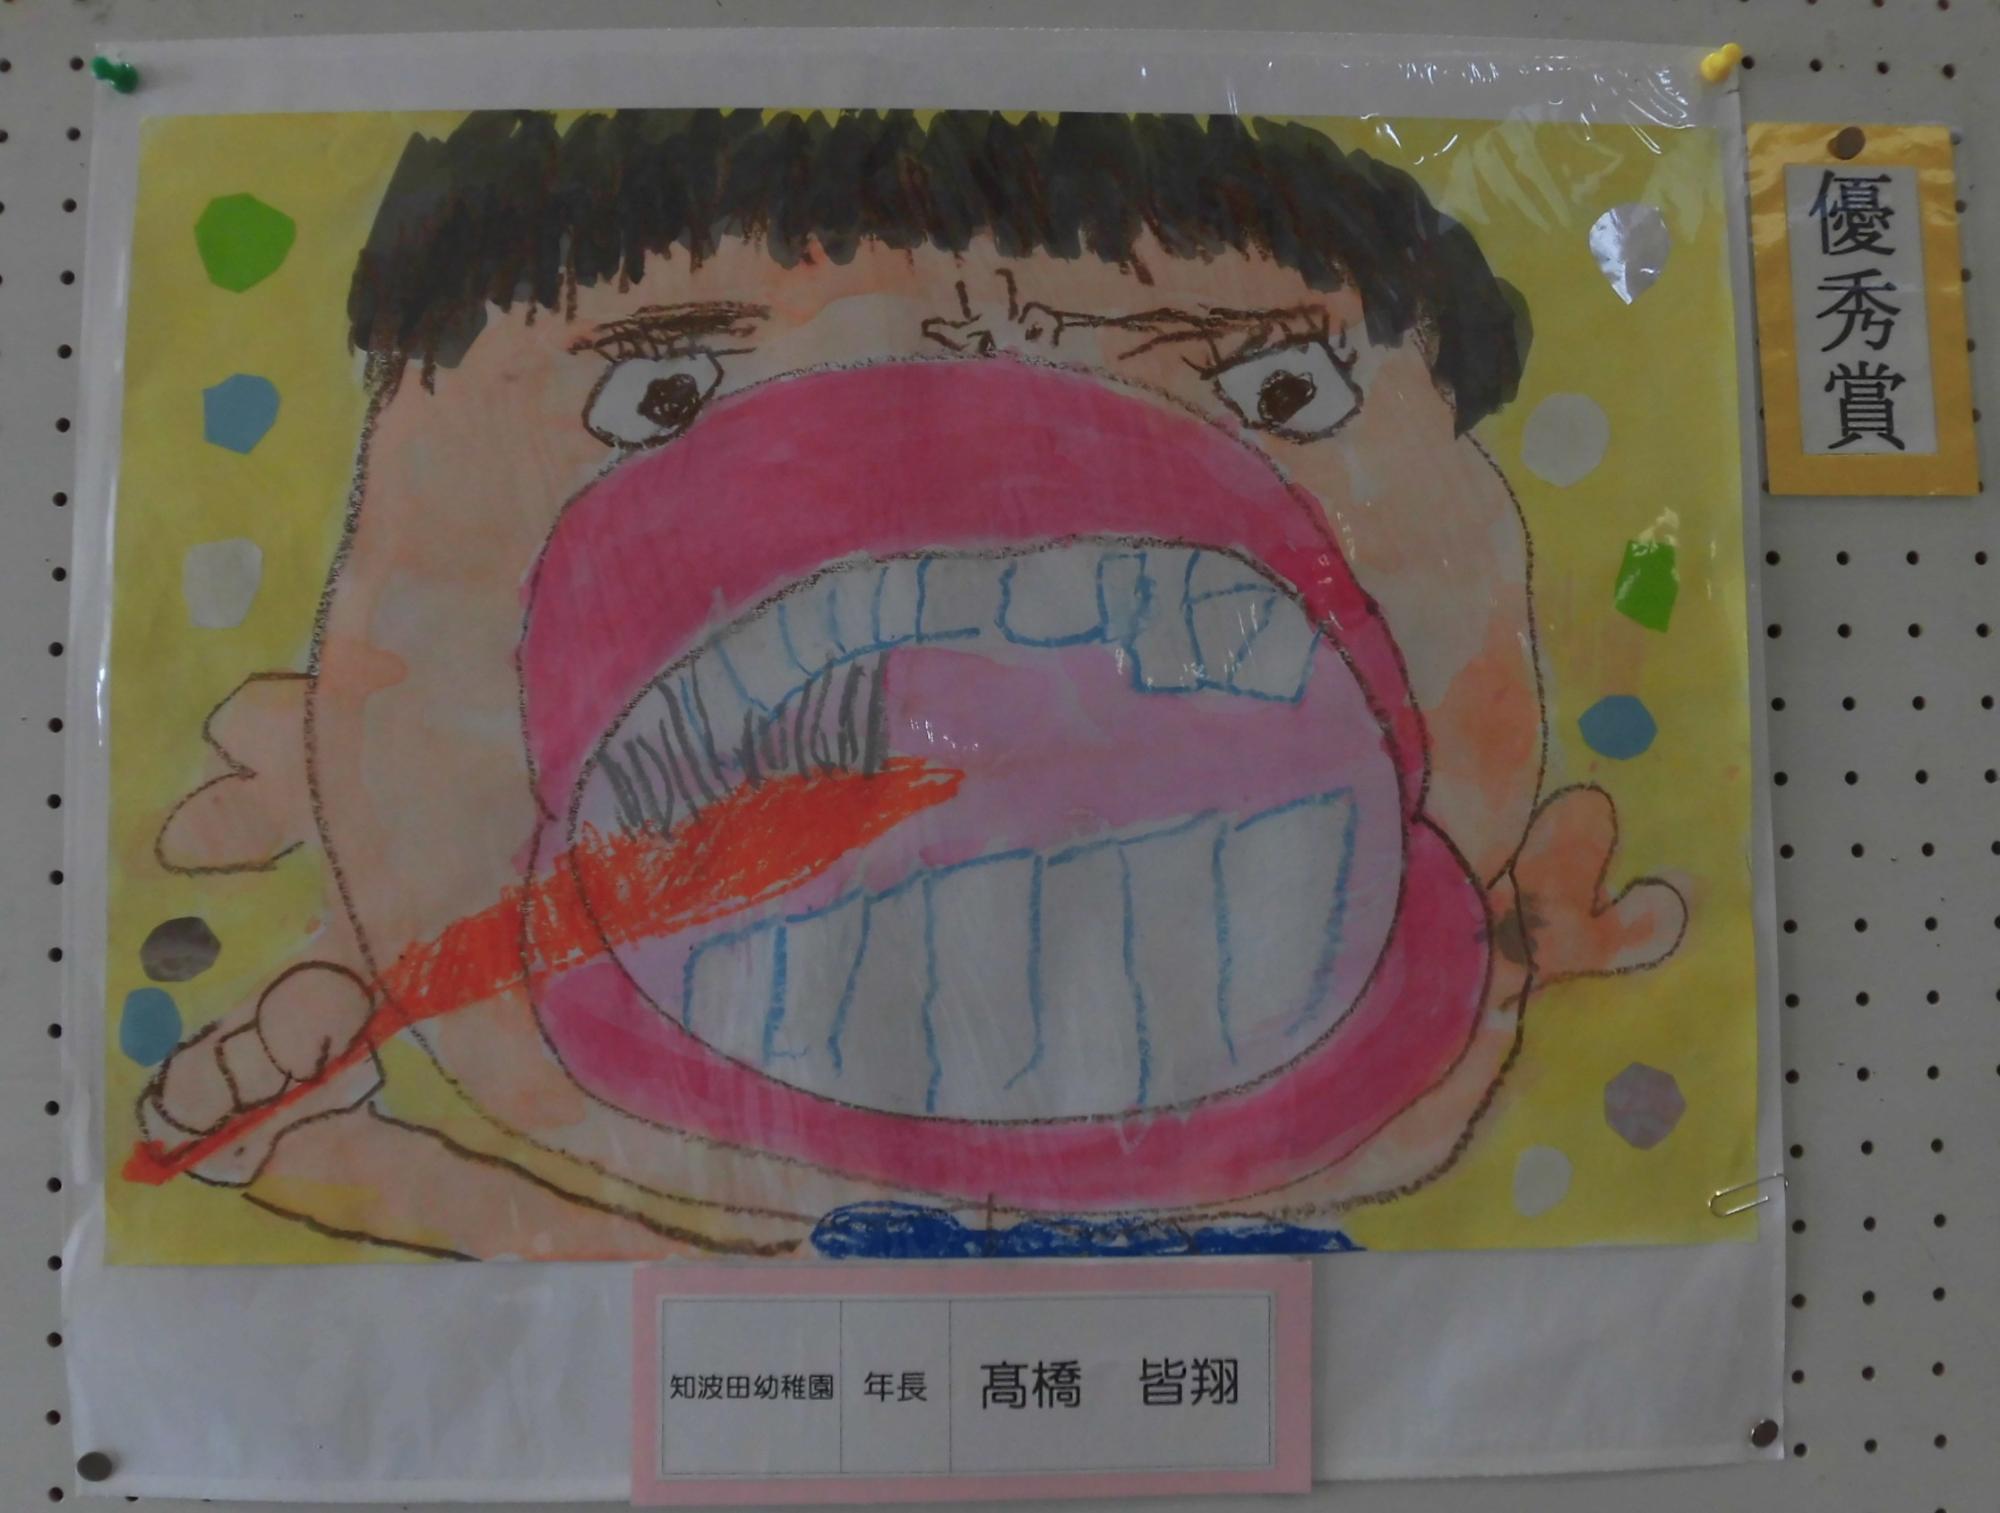 幼稚園の部優秀賞のポスターの写真